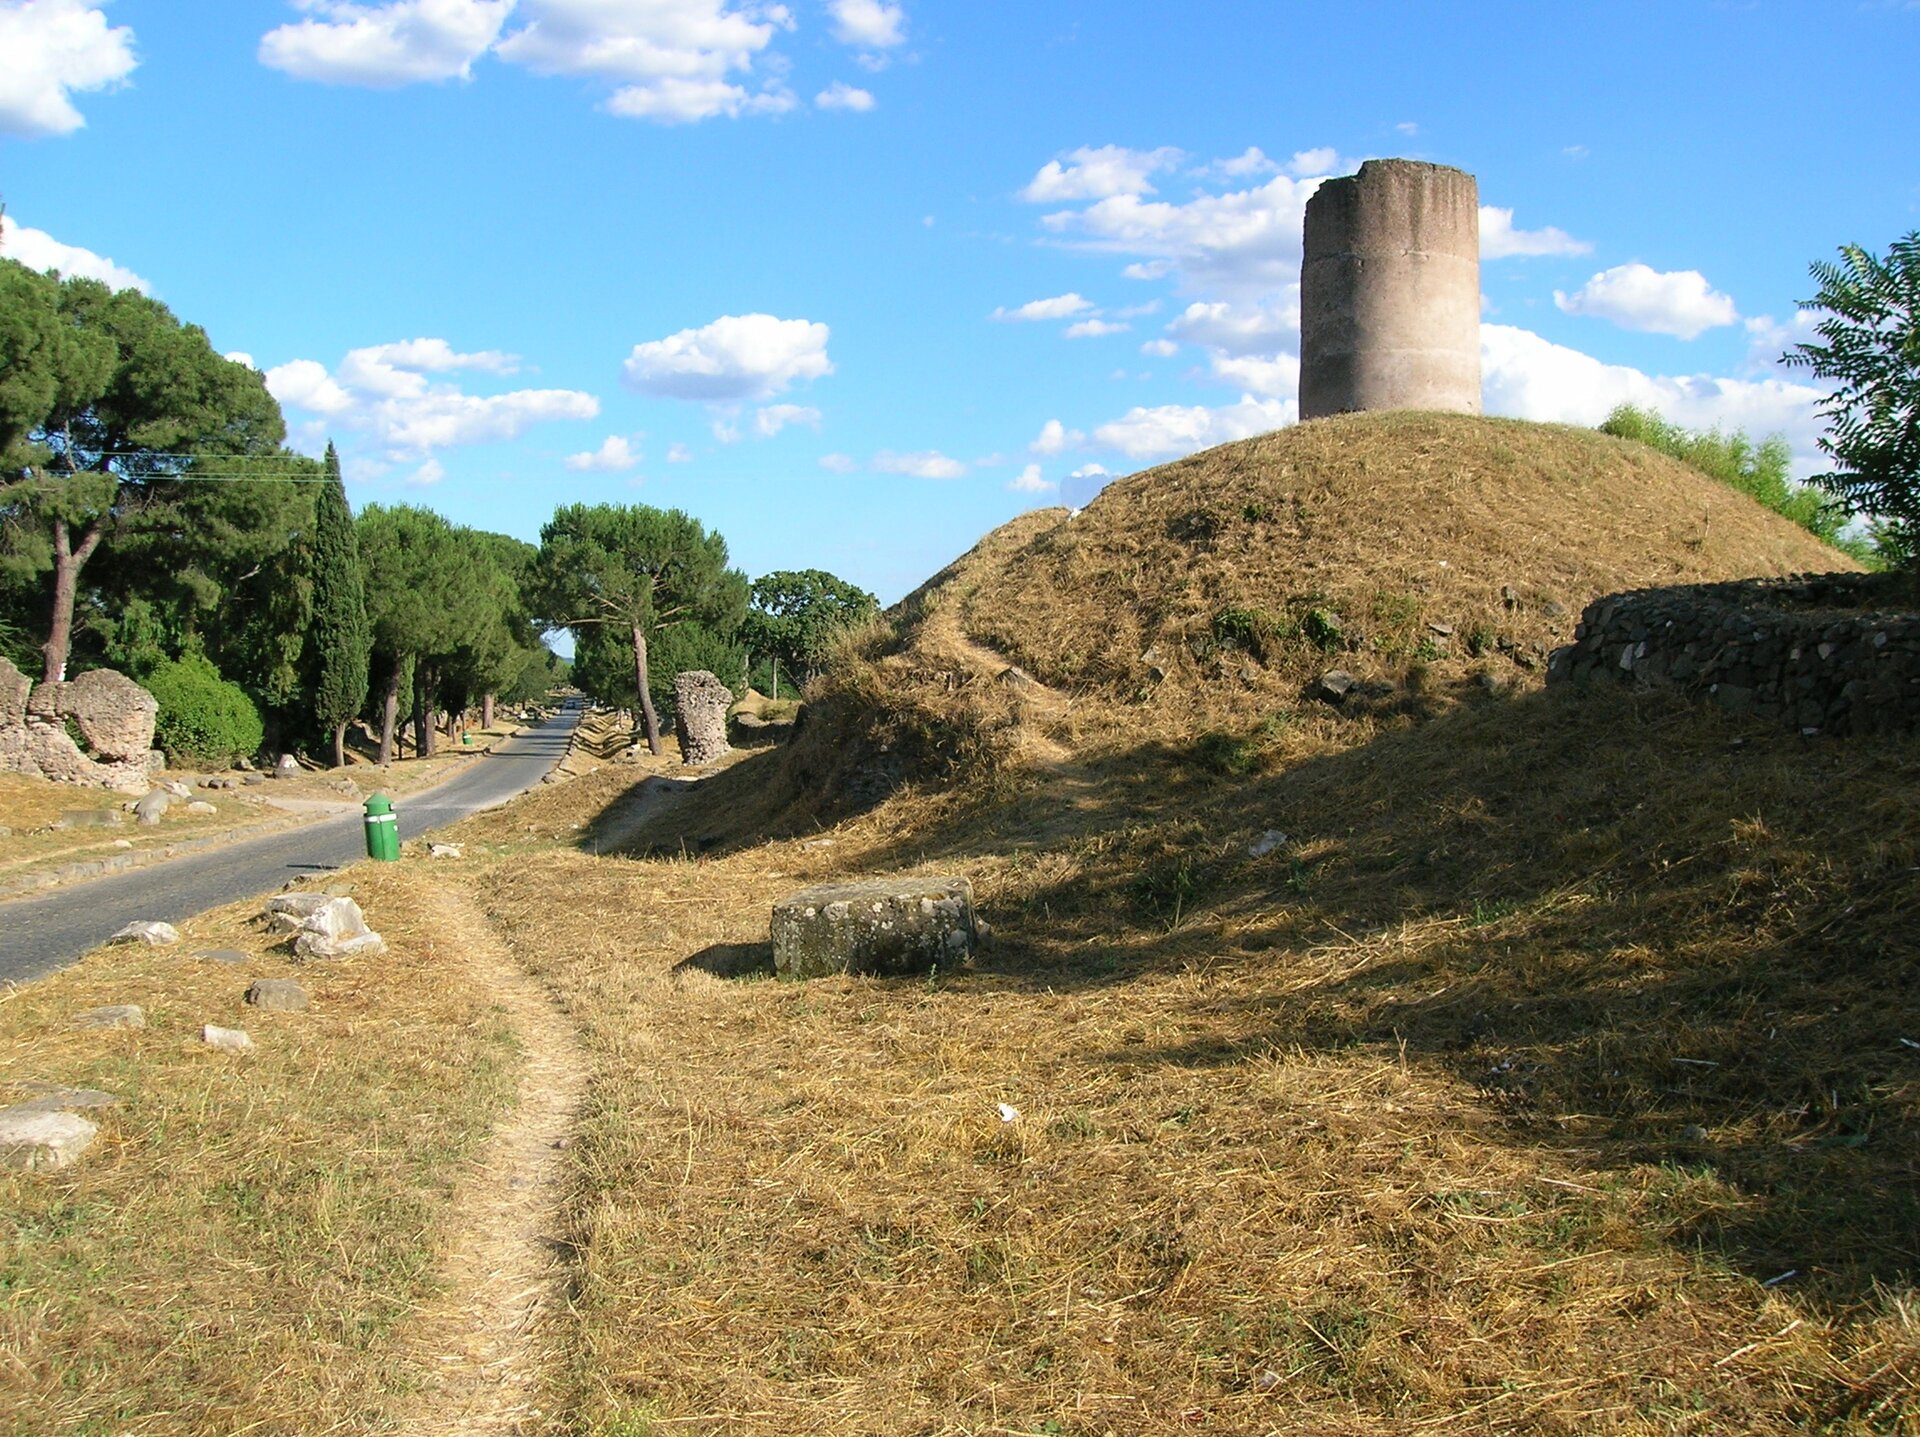 Ilustracja przedstawiająca legendarny grobowiec Kuracjuszy przy Via Appia. Ilustracja przedstawia okrągłą wieżyczkę stojącą na pagórku.